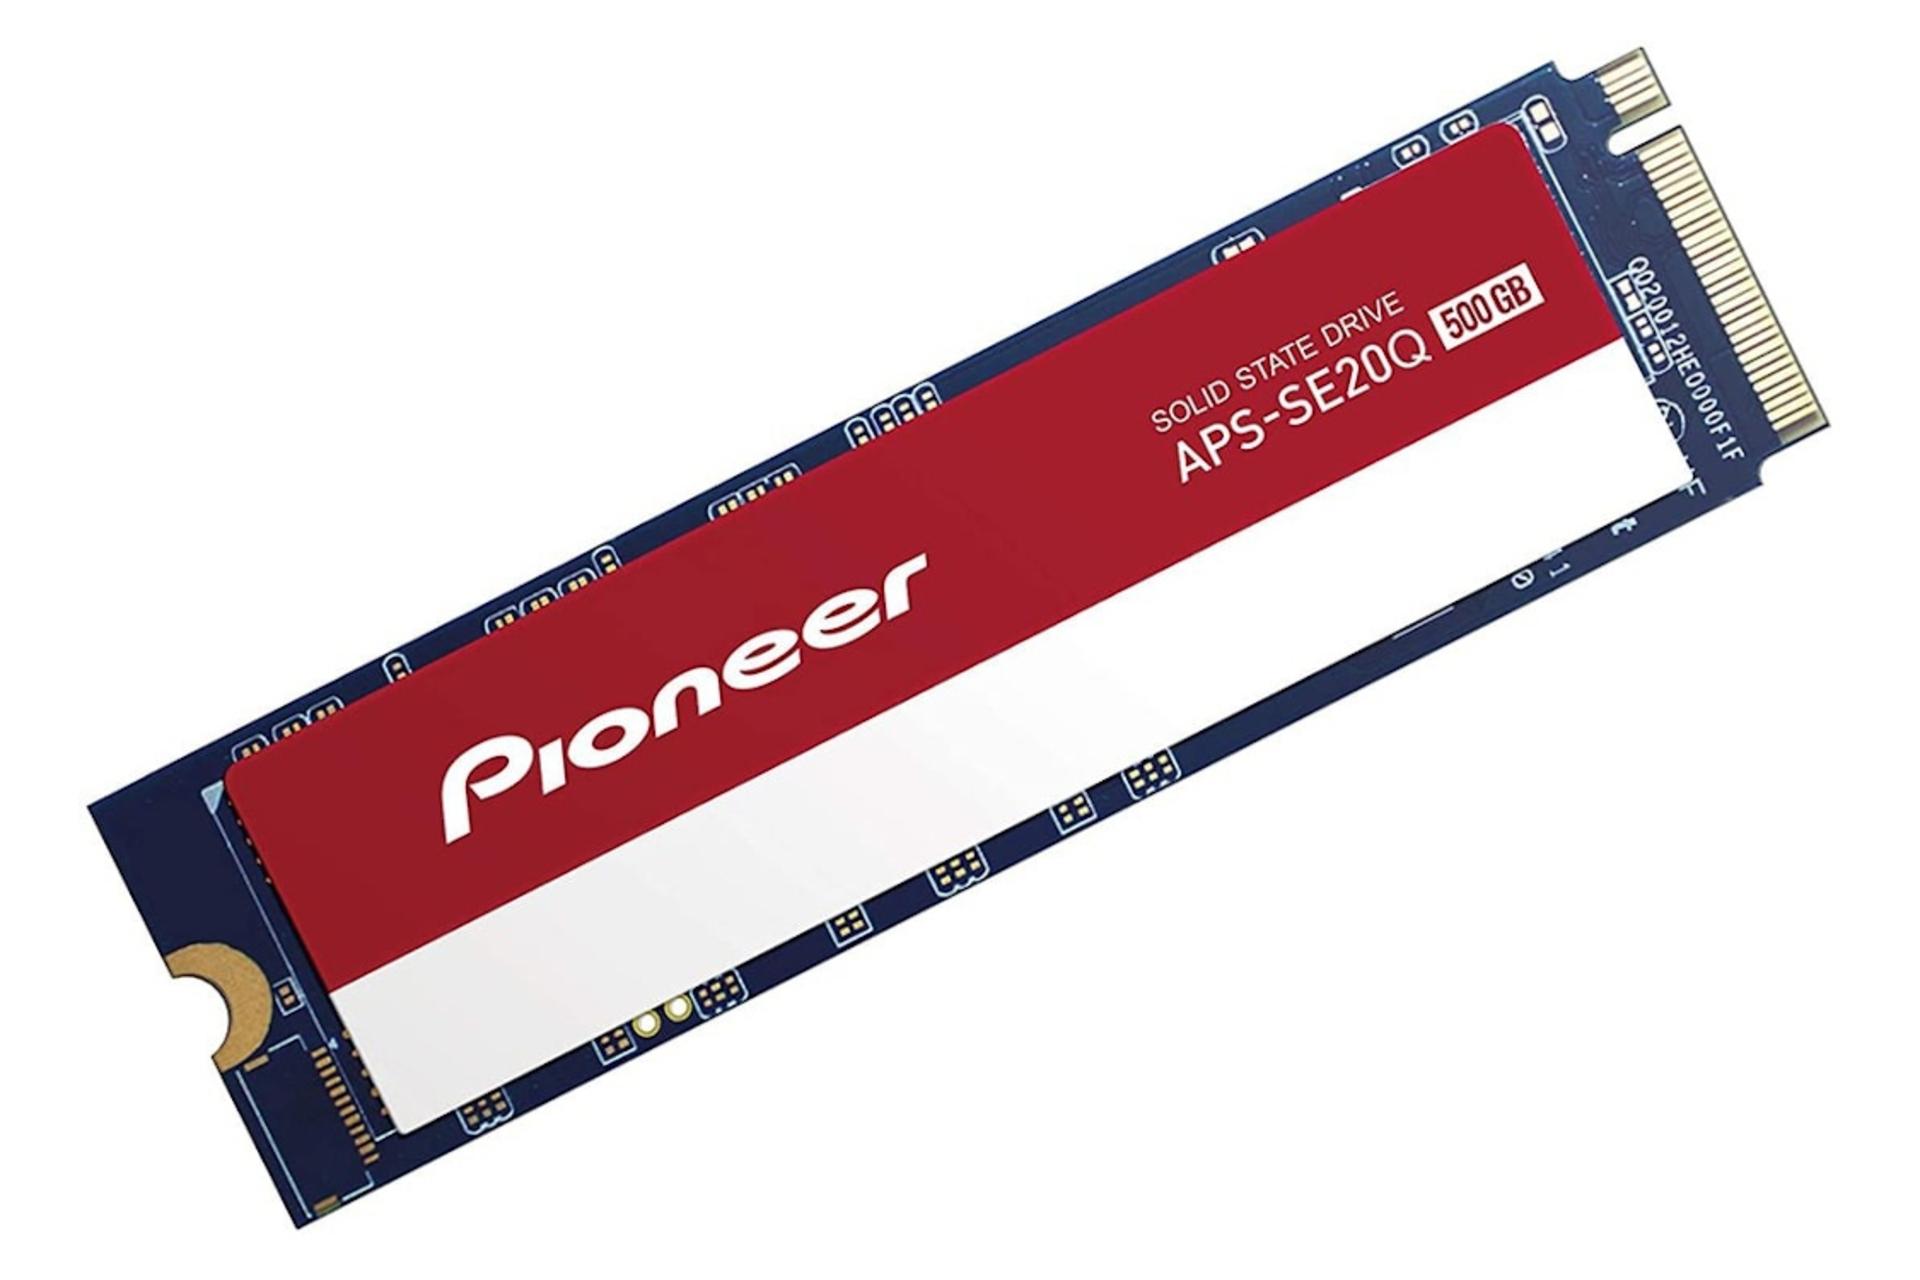 حافظه SSD پایونیر Pioneer APS-SE20Q NVMe M.2 500GB ظرفیت 500 گیگابایت